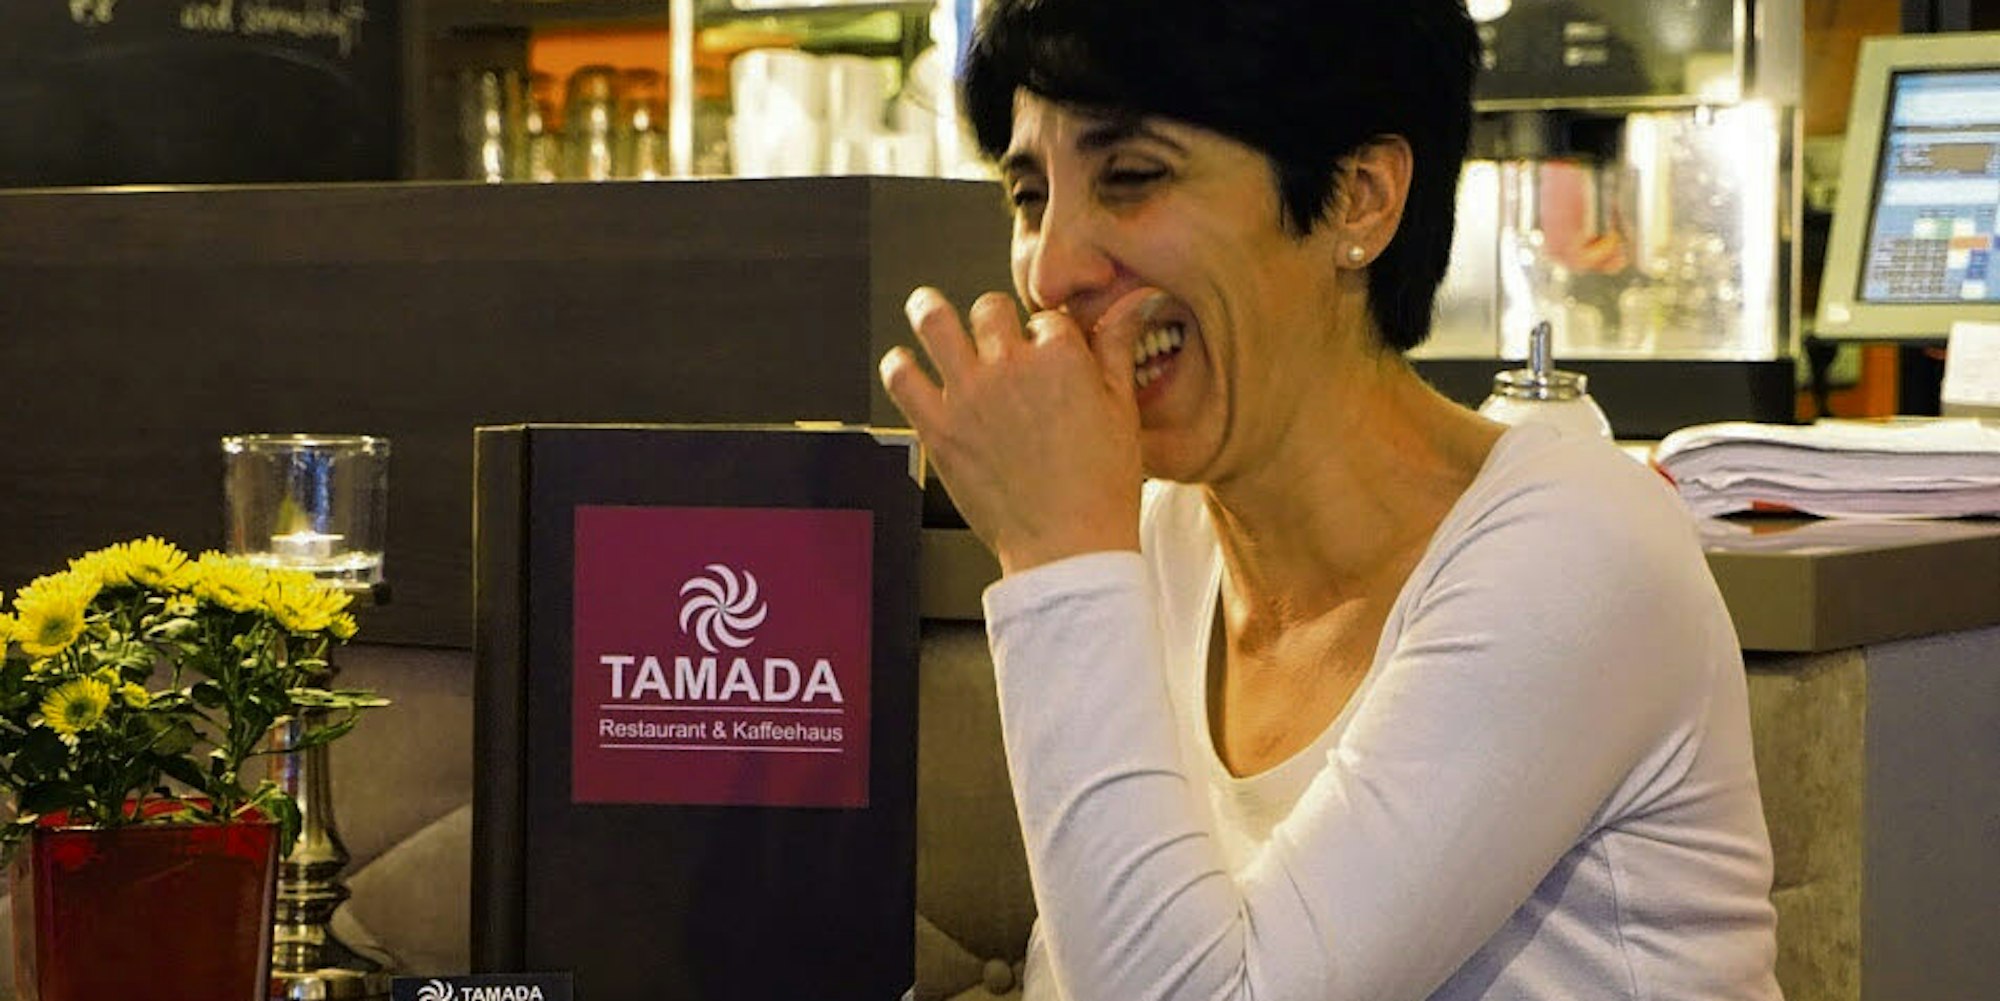 Ekatherine Serce, Inhaberin des Tamada, freut sich, dass in Köln auch georgisch gekocht wird (l.). Rote Wände, viele Spiegel: Das Tamada ist liebevoll eingerichtet.